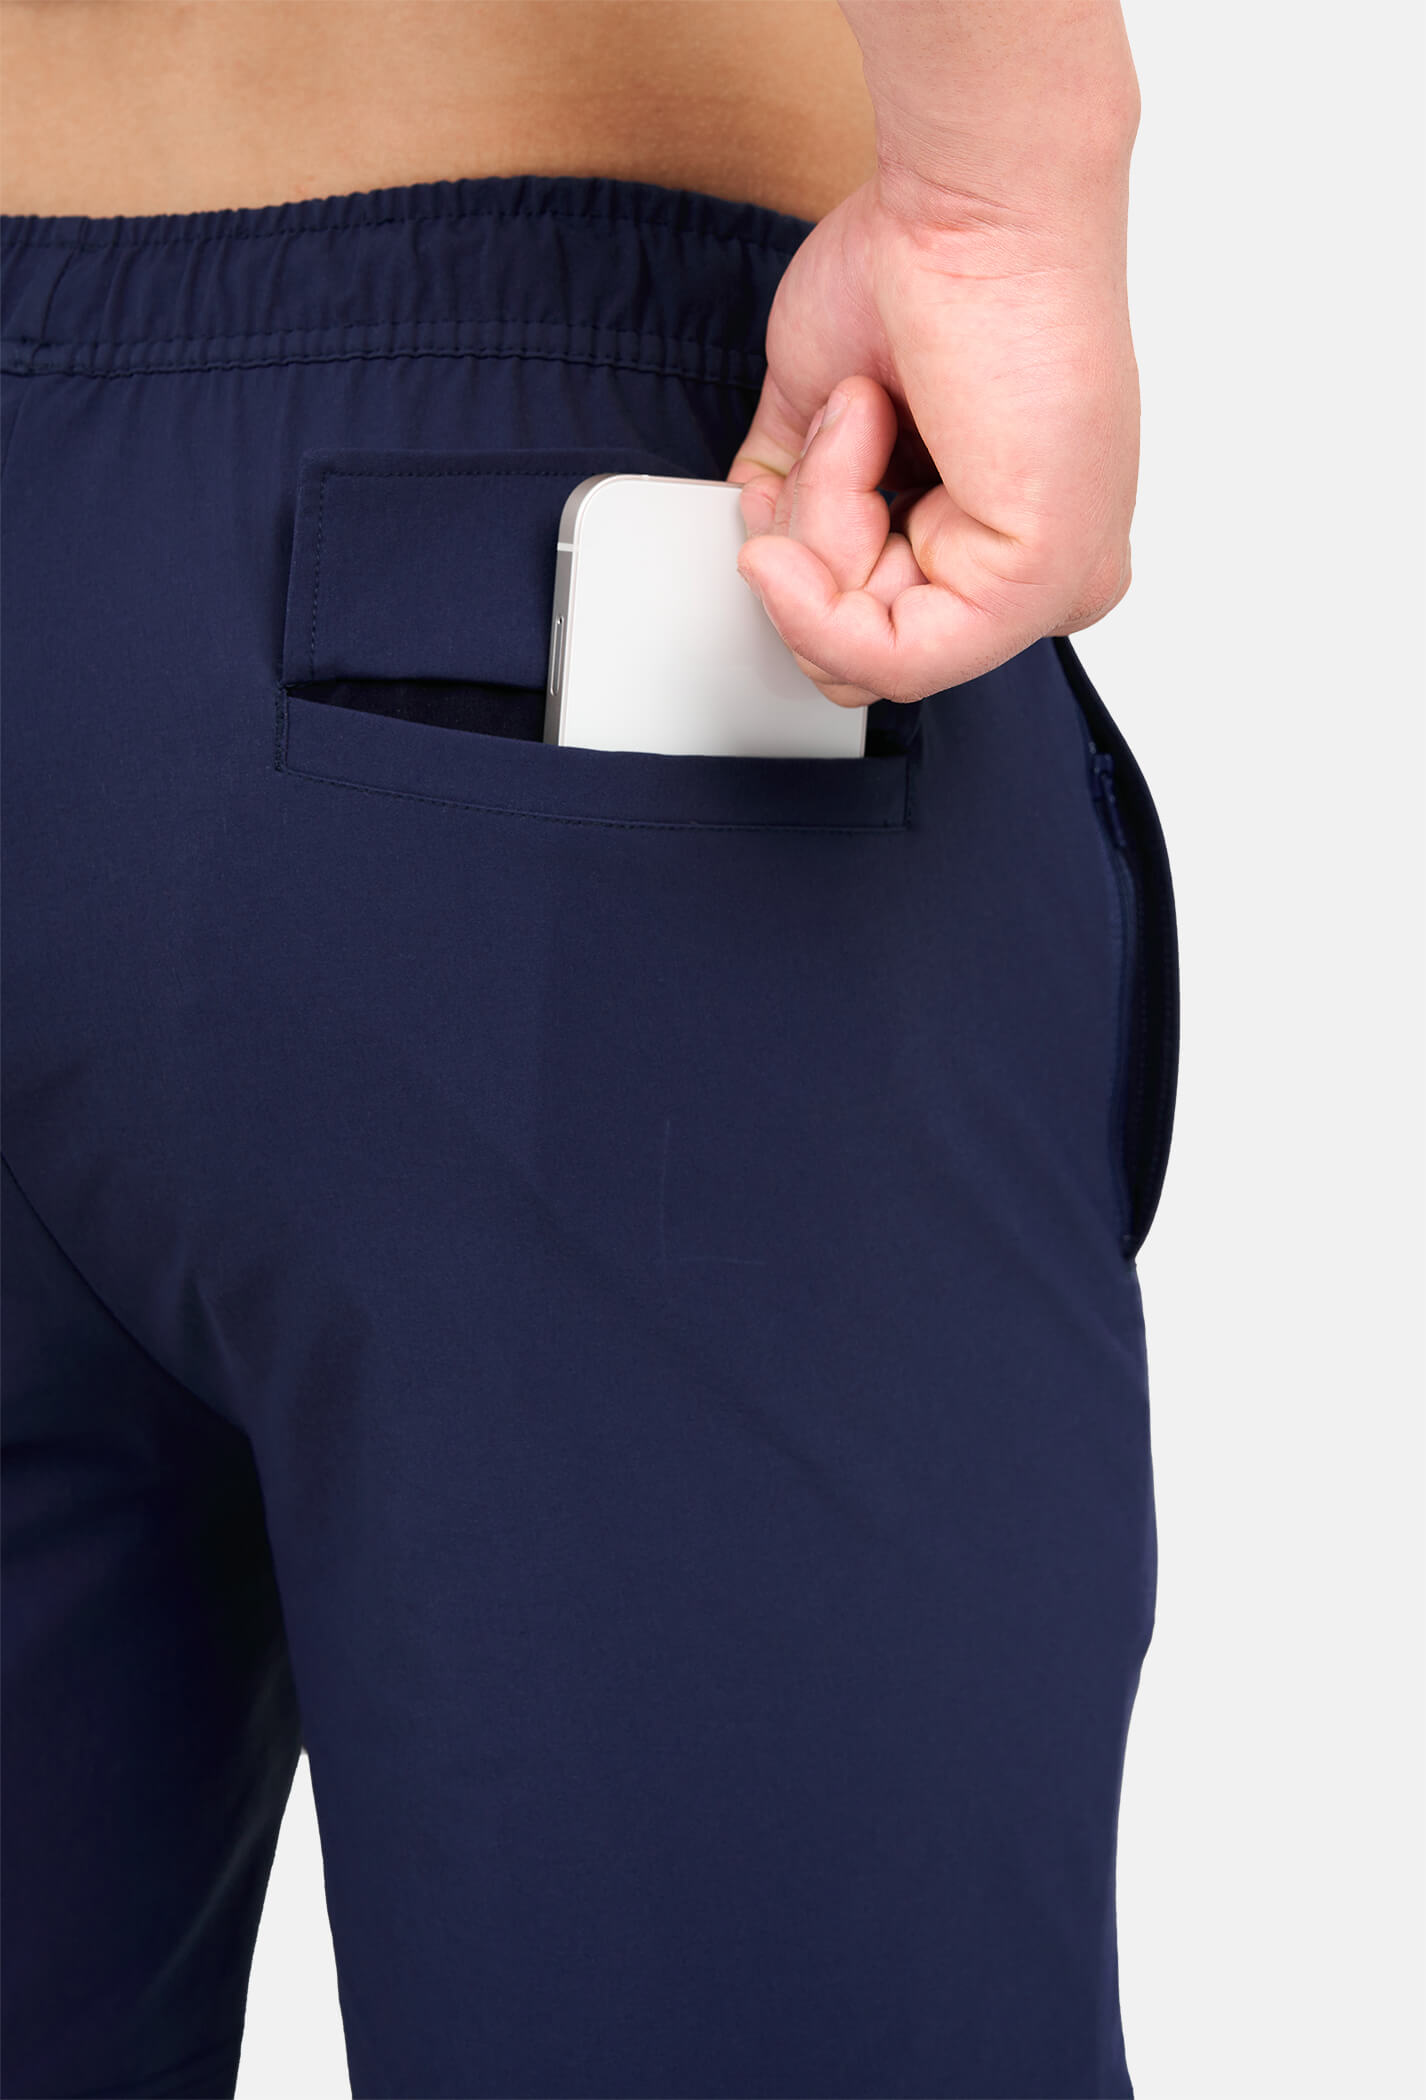 FLASH SALE - Quần Short Outdoor vải Nylon 7'' Co giãn (có túi sau) Tím than 2